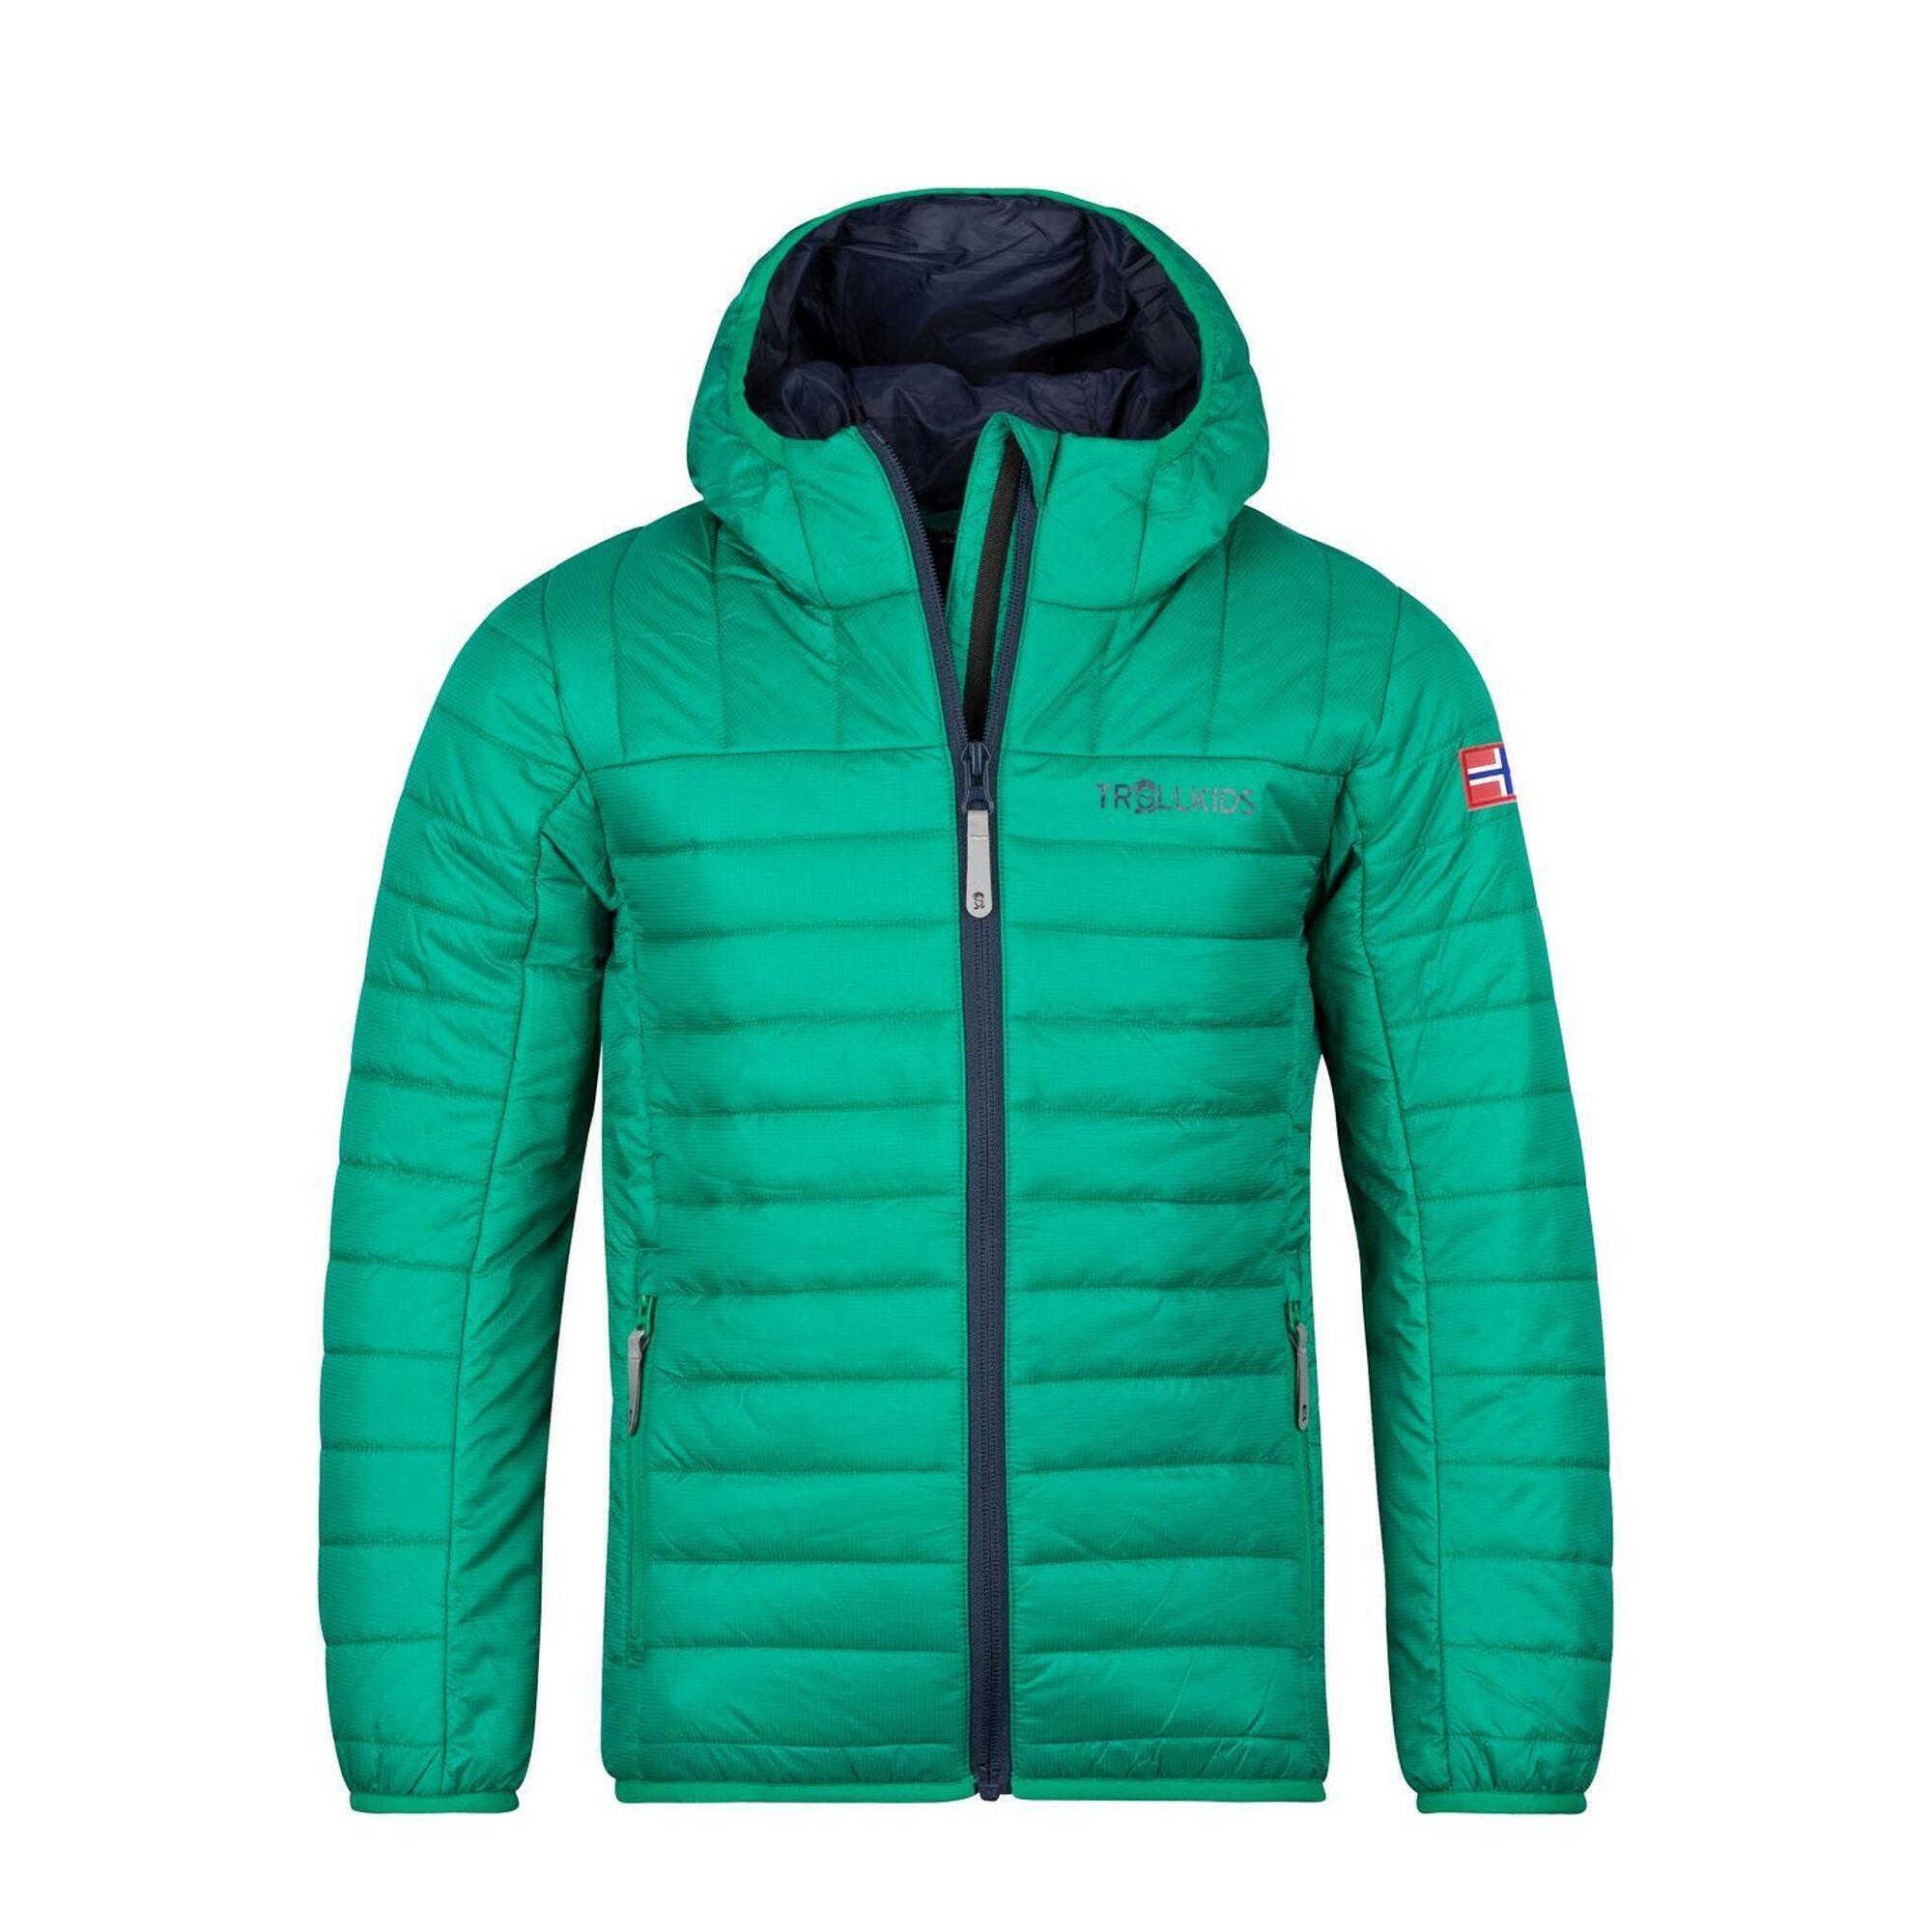 Куртка Trollkids Eikefjord, темно-зеленый/темно-синий куртка стеганая средней длины с пришитым капюшоном зимняя l черный